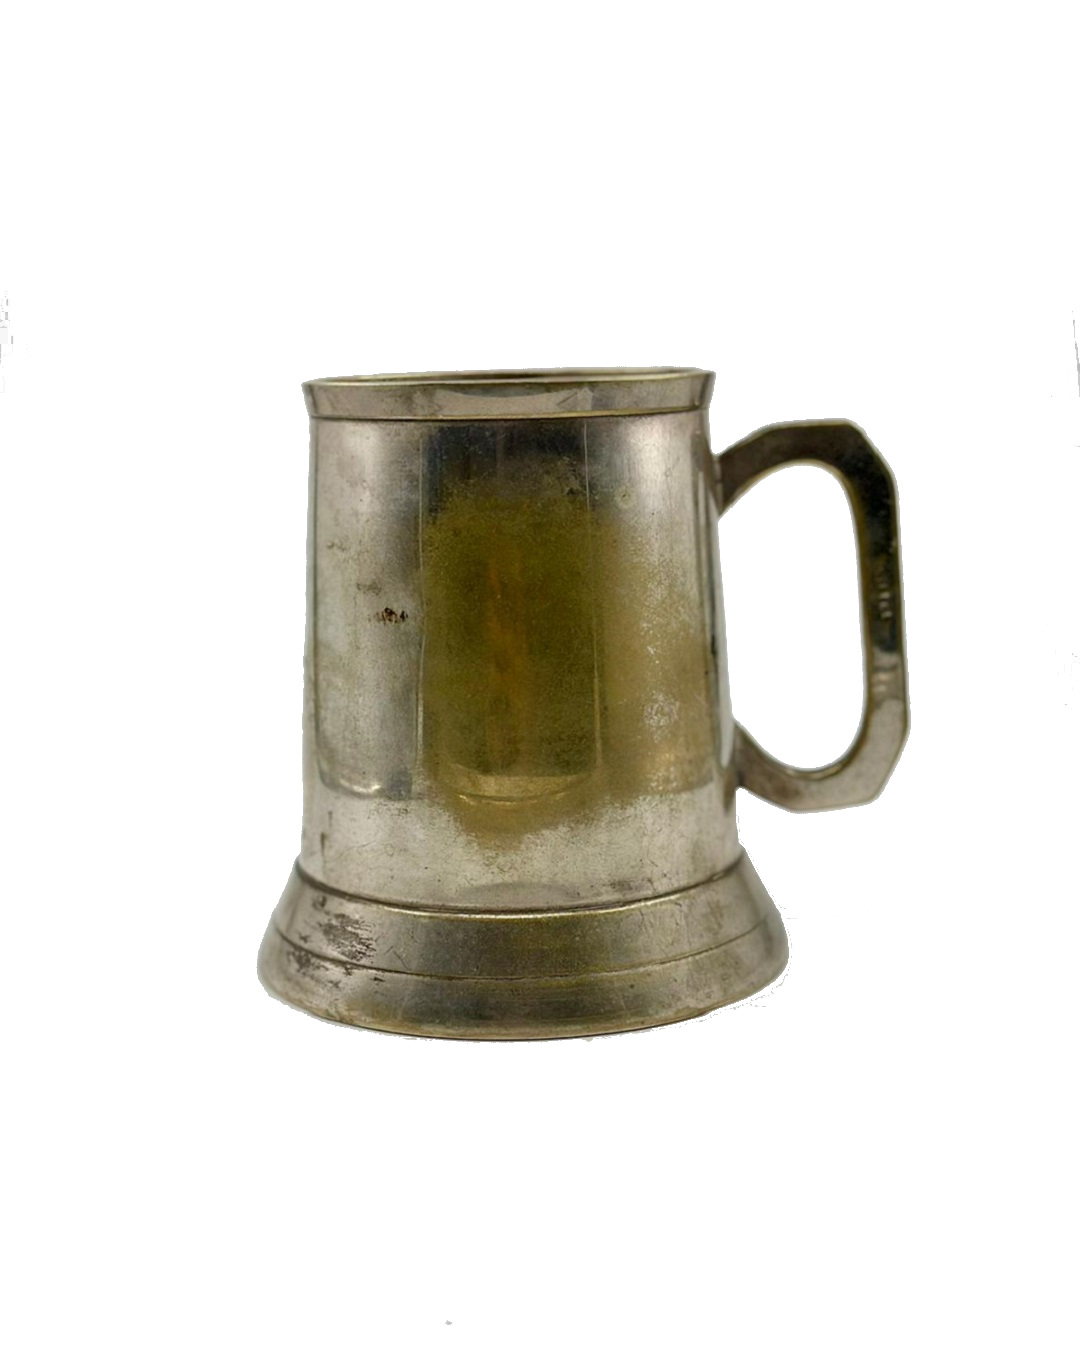 Vintage silverplated tankard mug